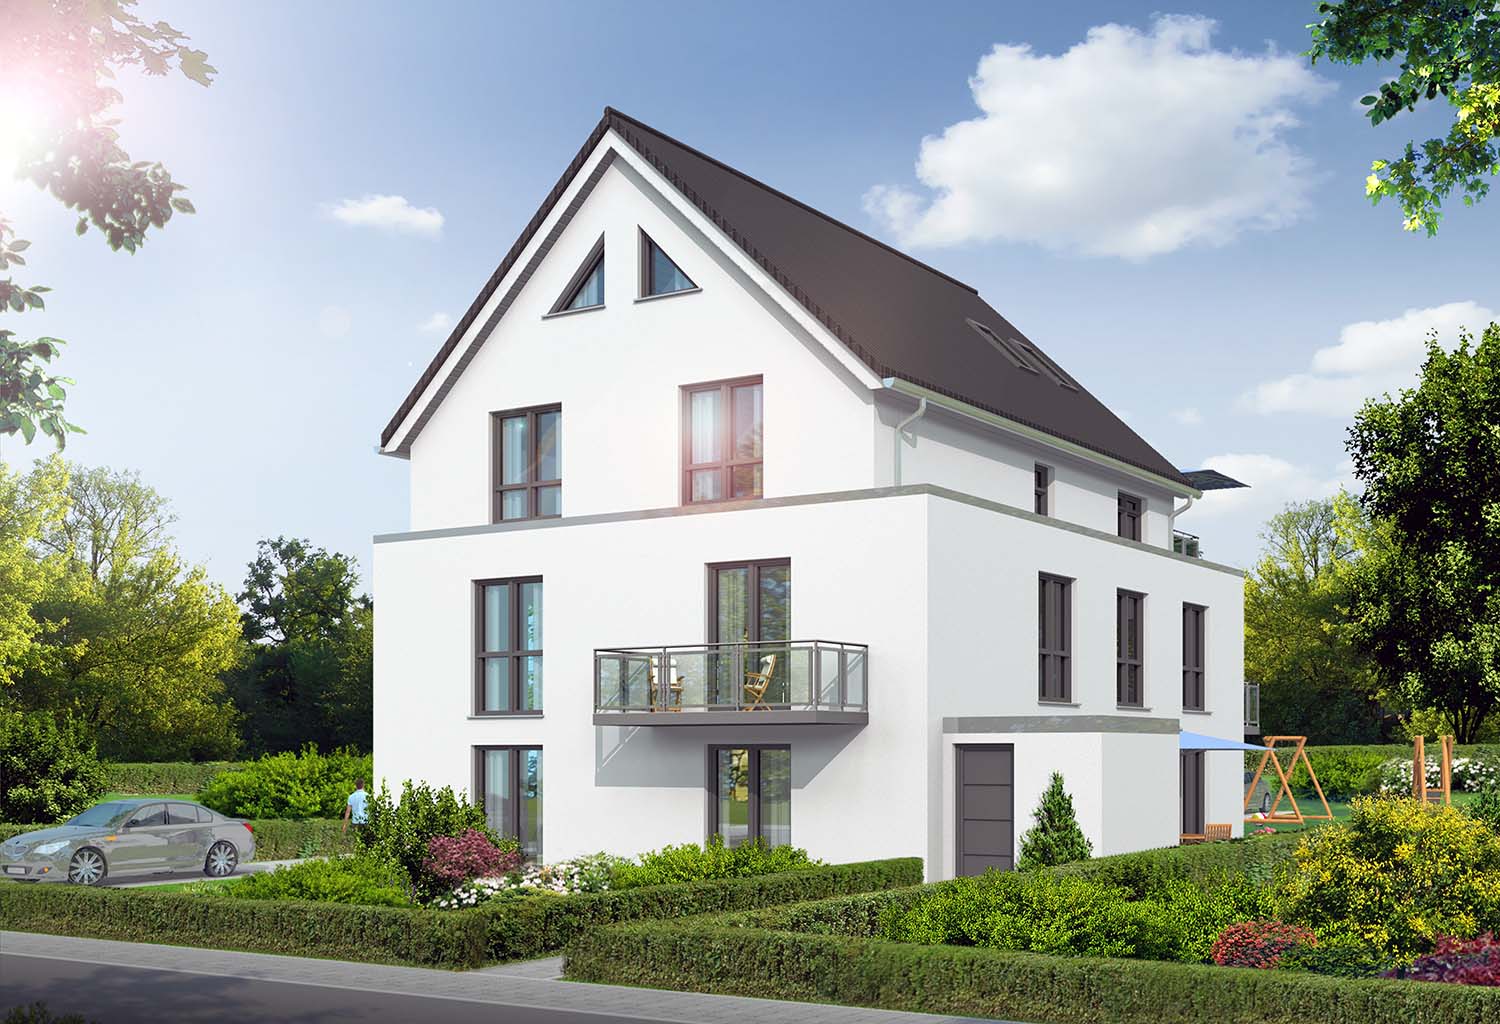 Visualisierung Neubau eines Mehrfamilienhauses mit 5 Wohneinheiten in Haidlohstraße, Hamburg-Schnelsen für SBL Immobilien GmbH (Jahr 2013)